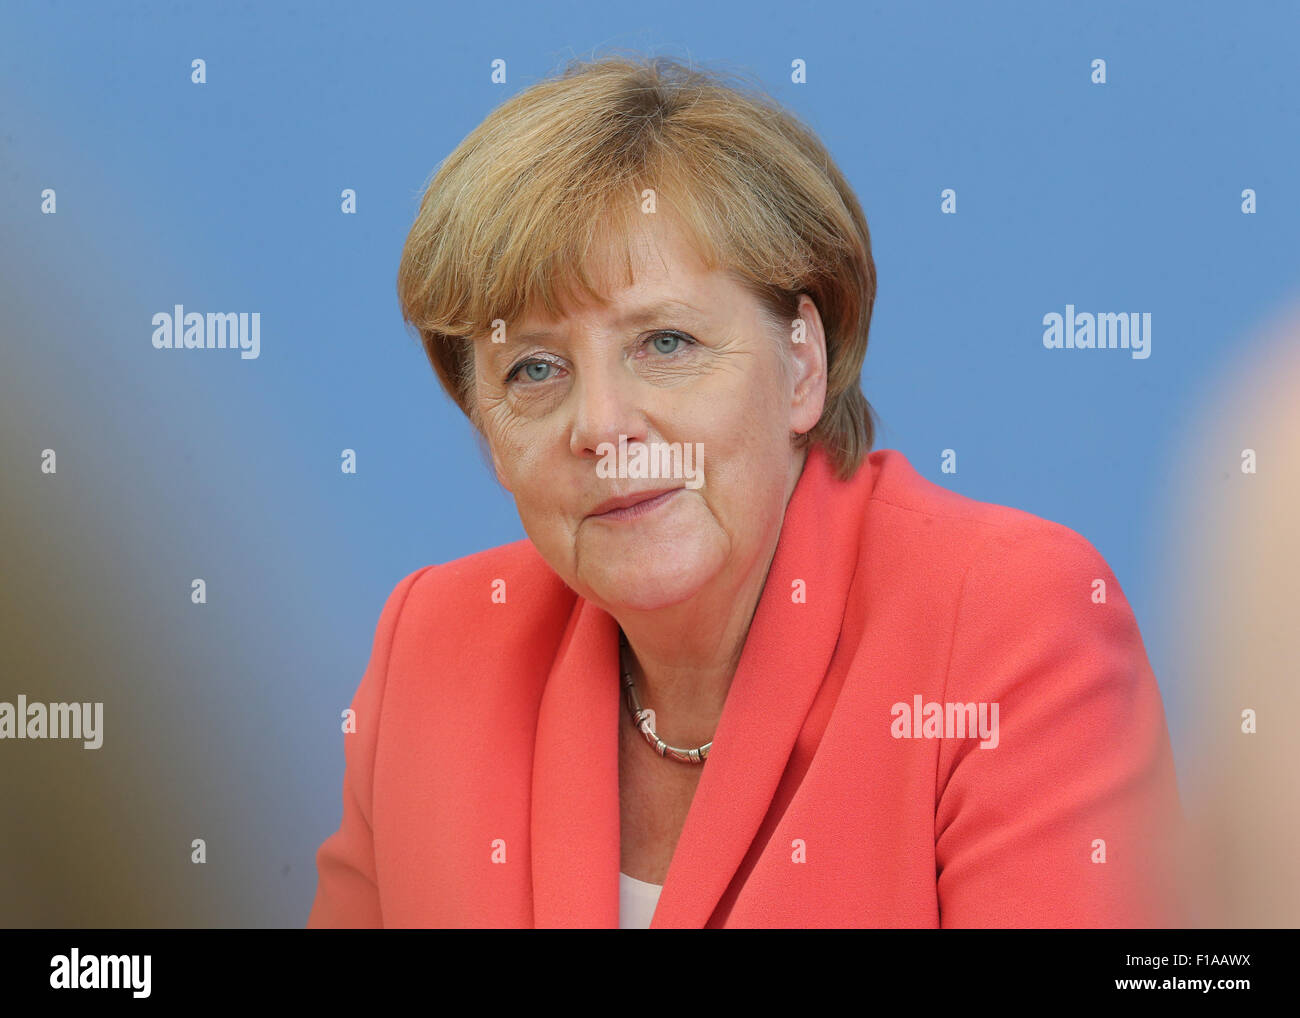 Deutsche Bundeskanzlerin Angela Merkel (CDU) spricht im Rahmen einer Pressekonferenz über verschiedene Angelegenheiten der in- und ausländischen Politik in Berlin, Deutschland, 31. August 2015. Foto: WOLFGANG KUMM/dpa Stockfoto